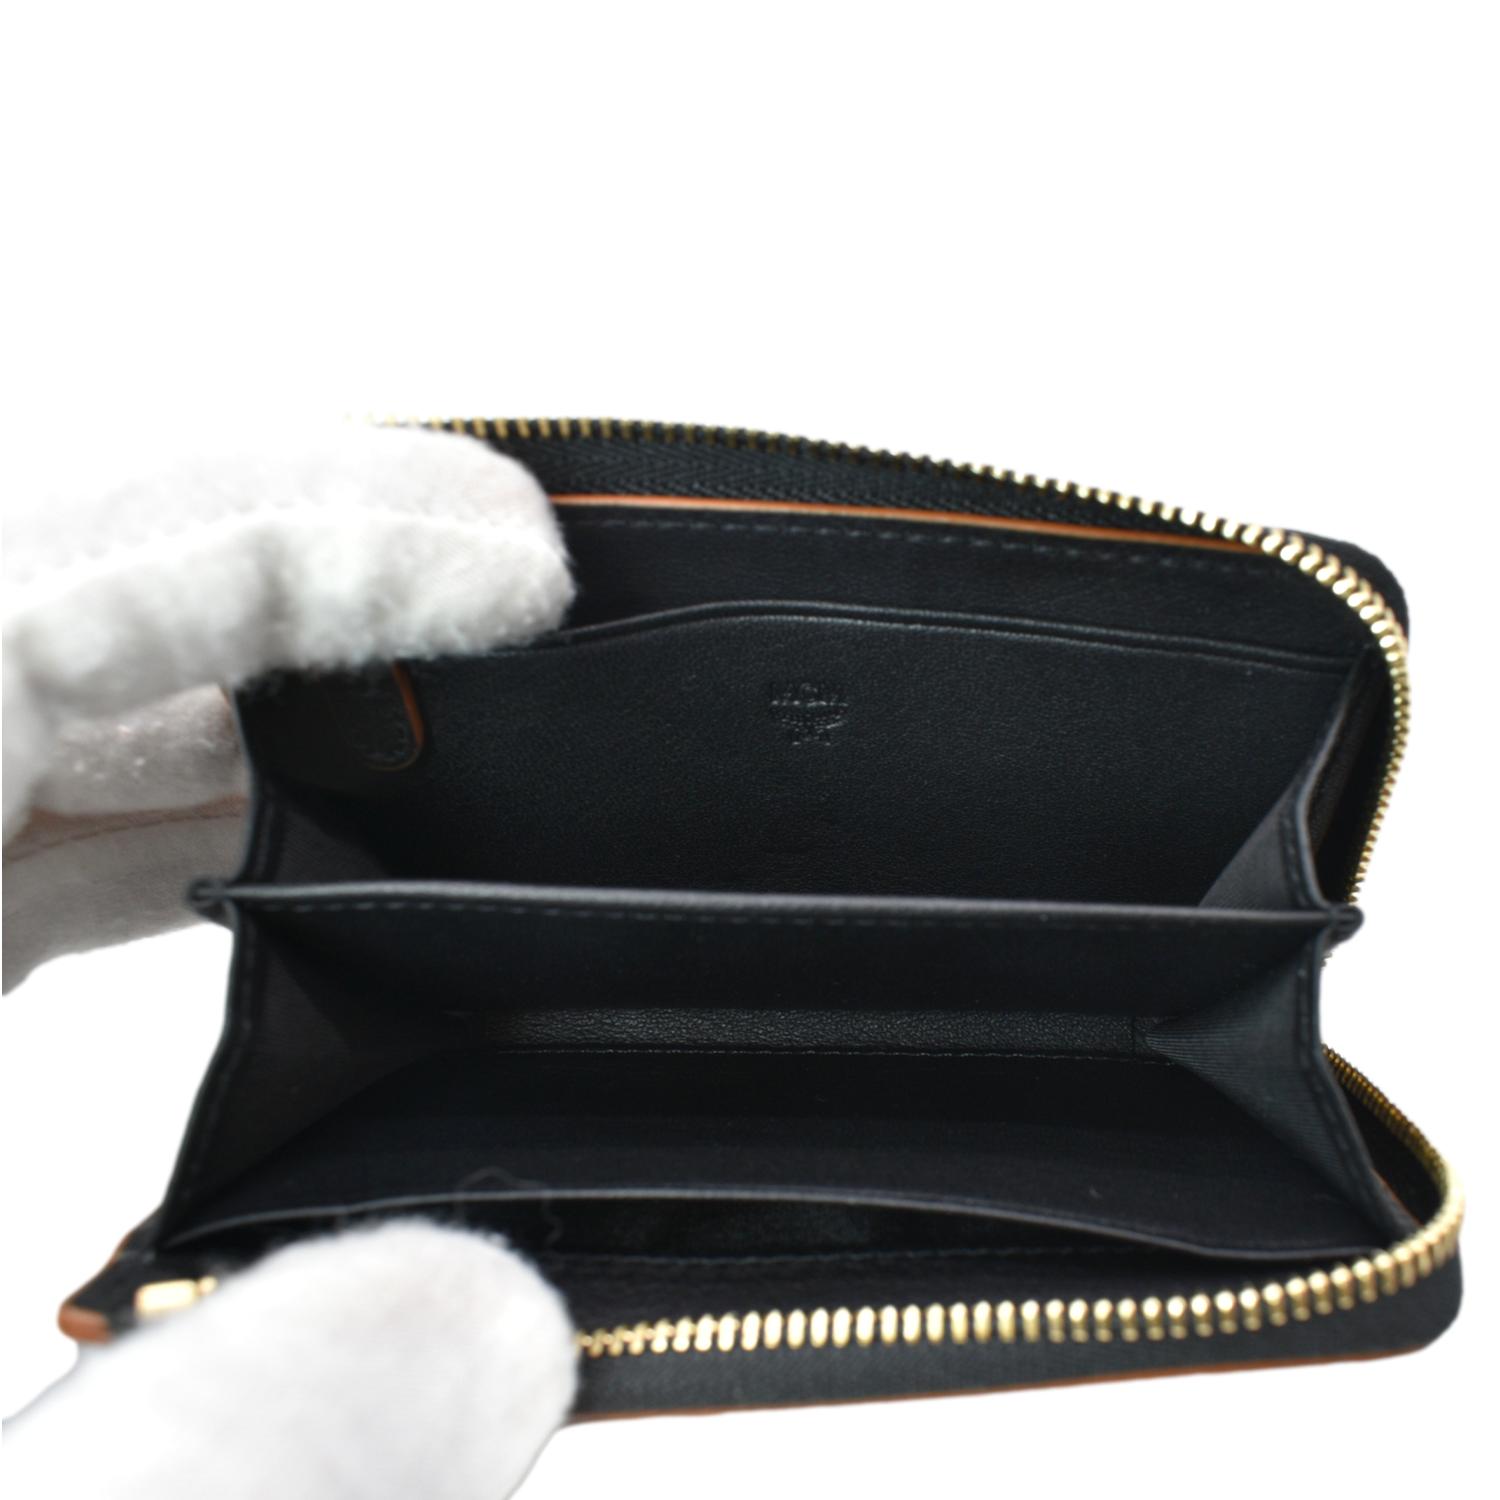 Mcm Aren Snap Wallet in Embossed Monogram Leather, Black